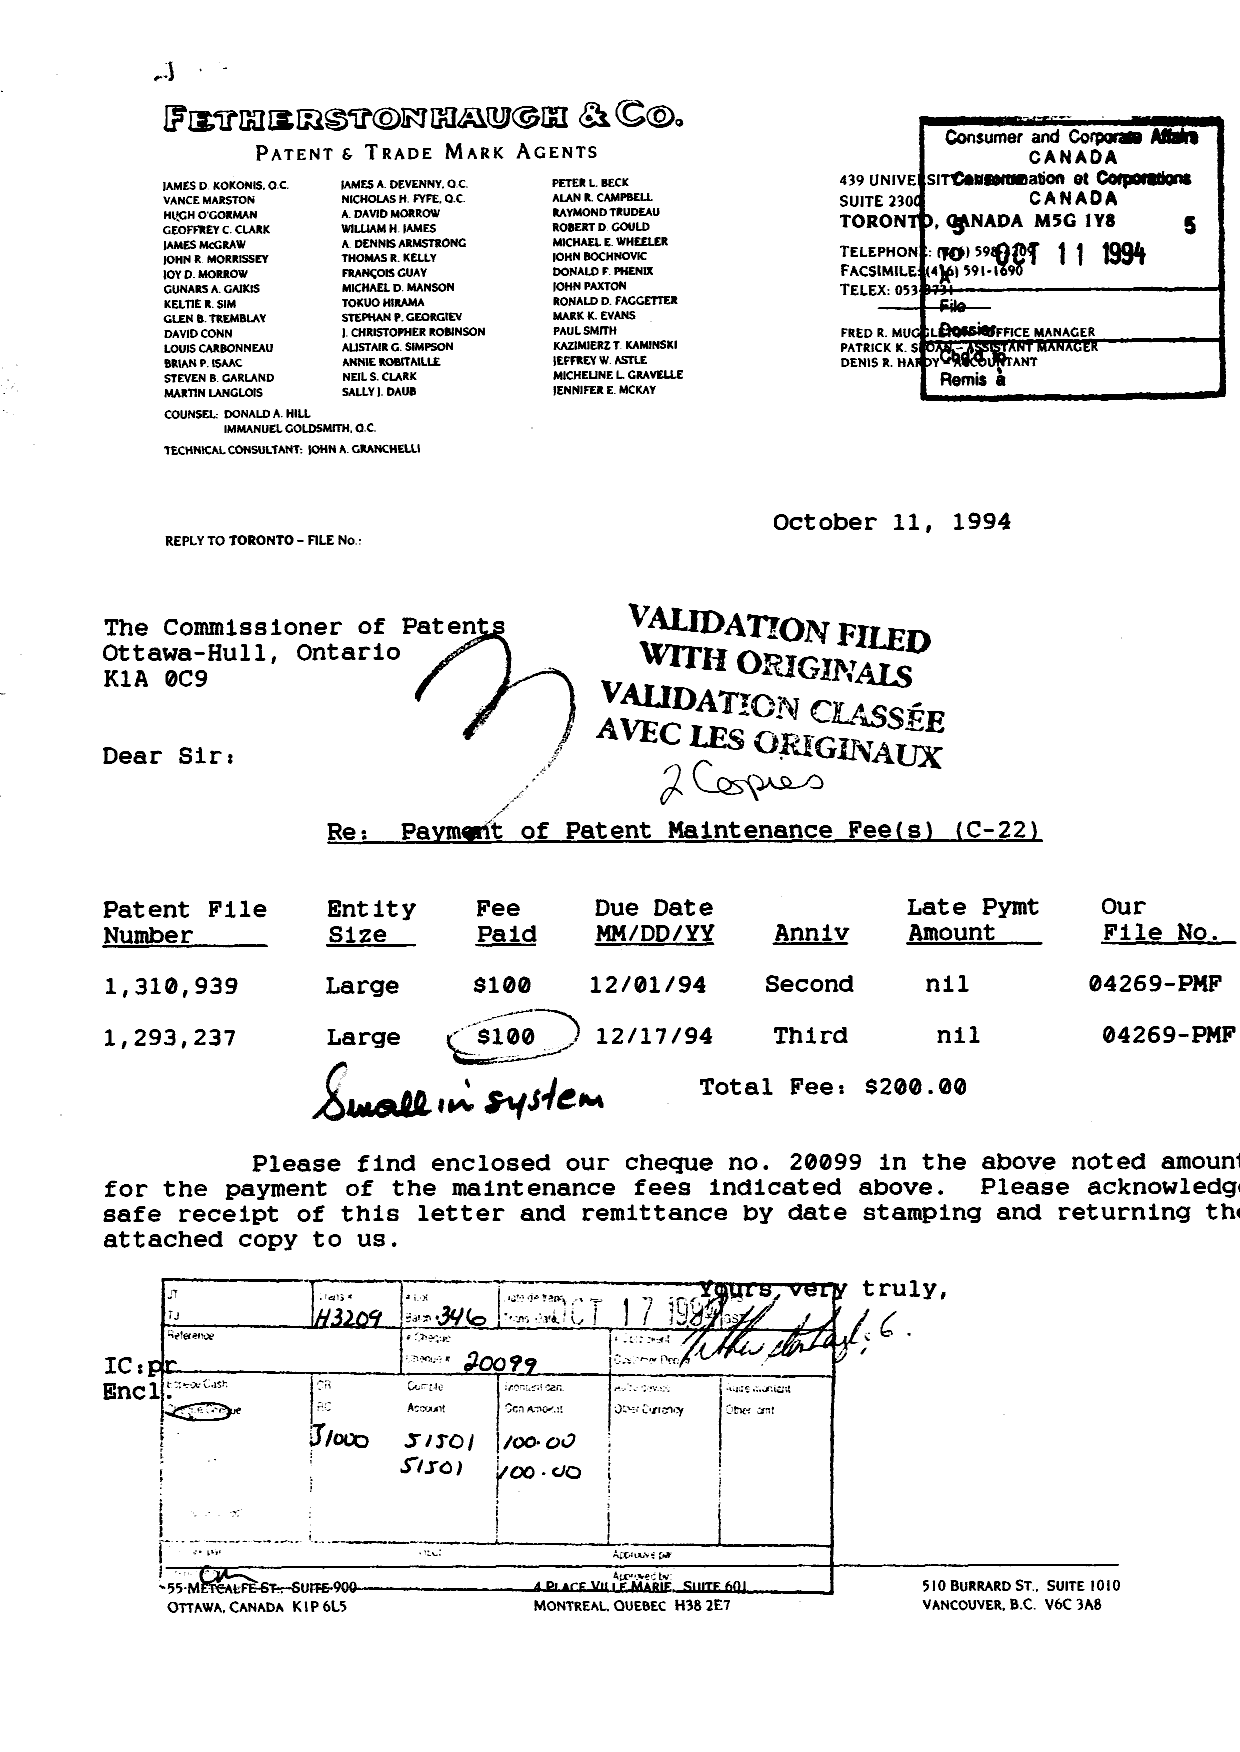 Document de brevet canadien 1293237. Taxes 19941011. Image 1 de 1